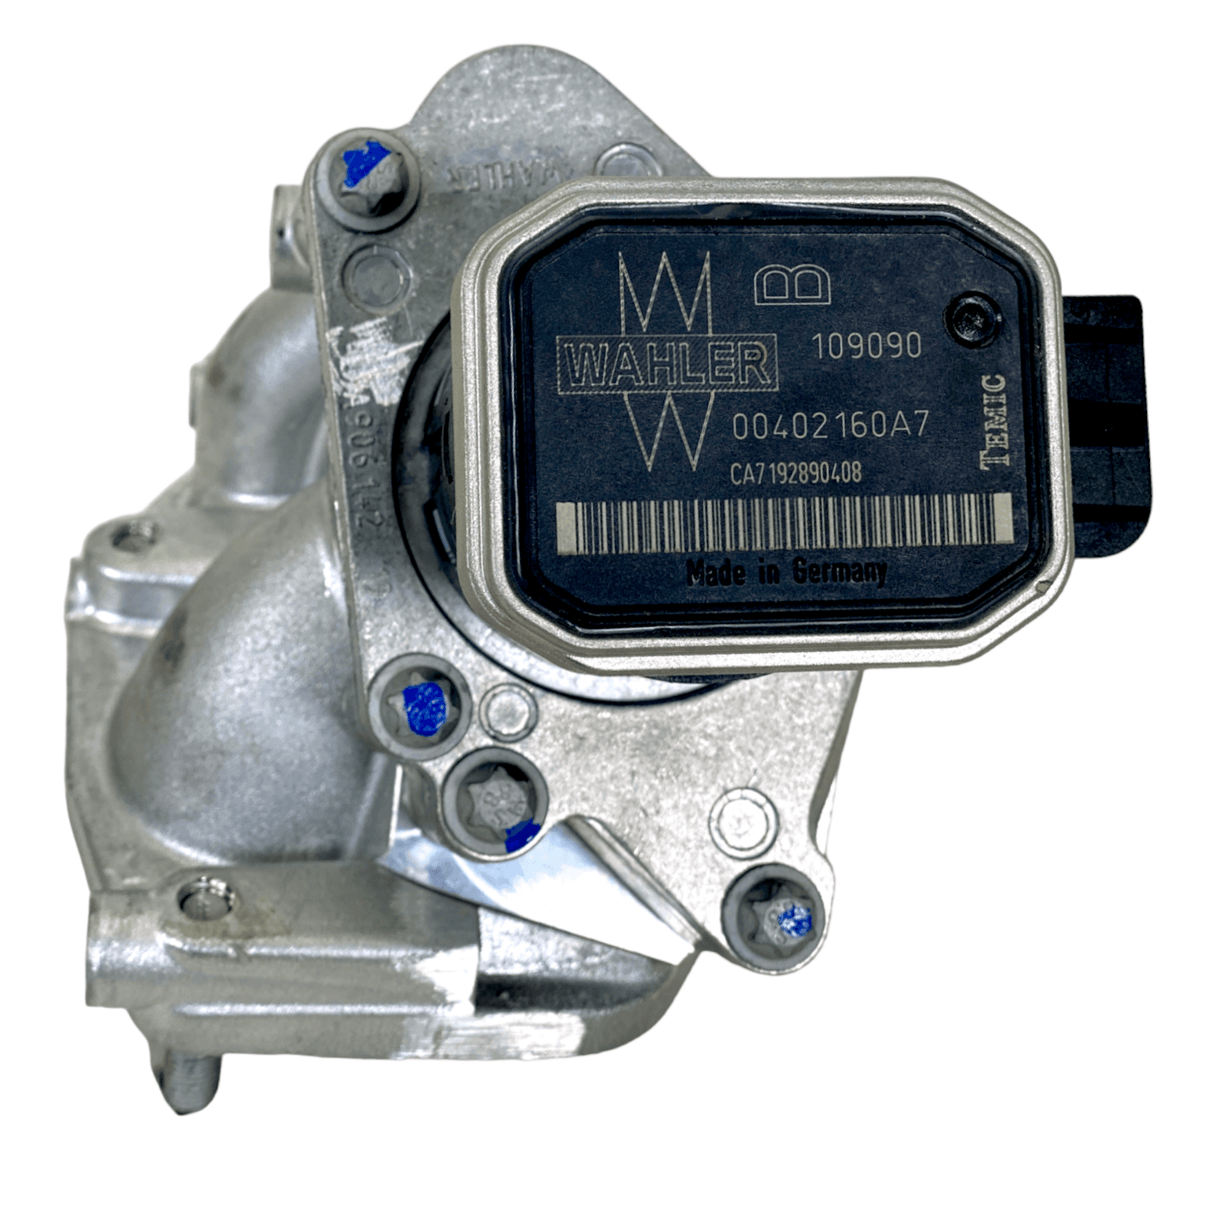 A9061420219 Genuine Detroit Diesel EGR Exhaust Gas Recirculation Valve.